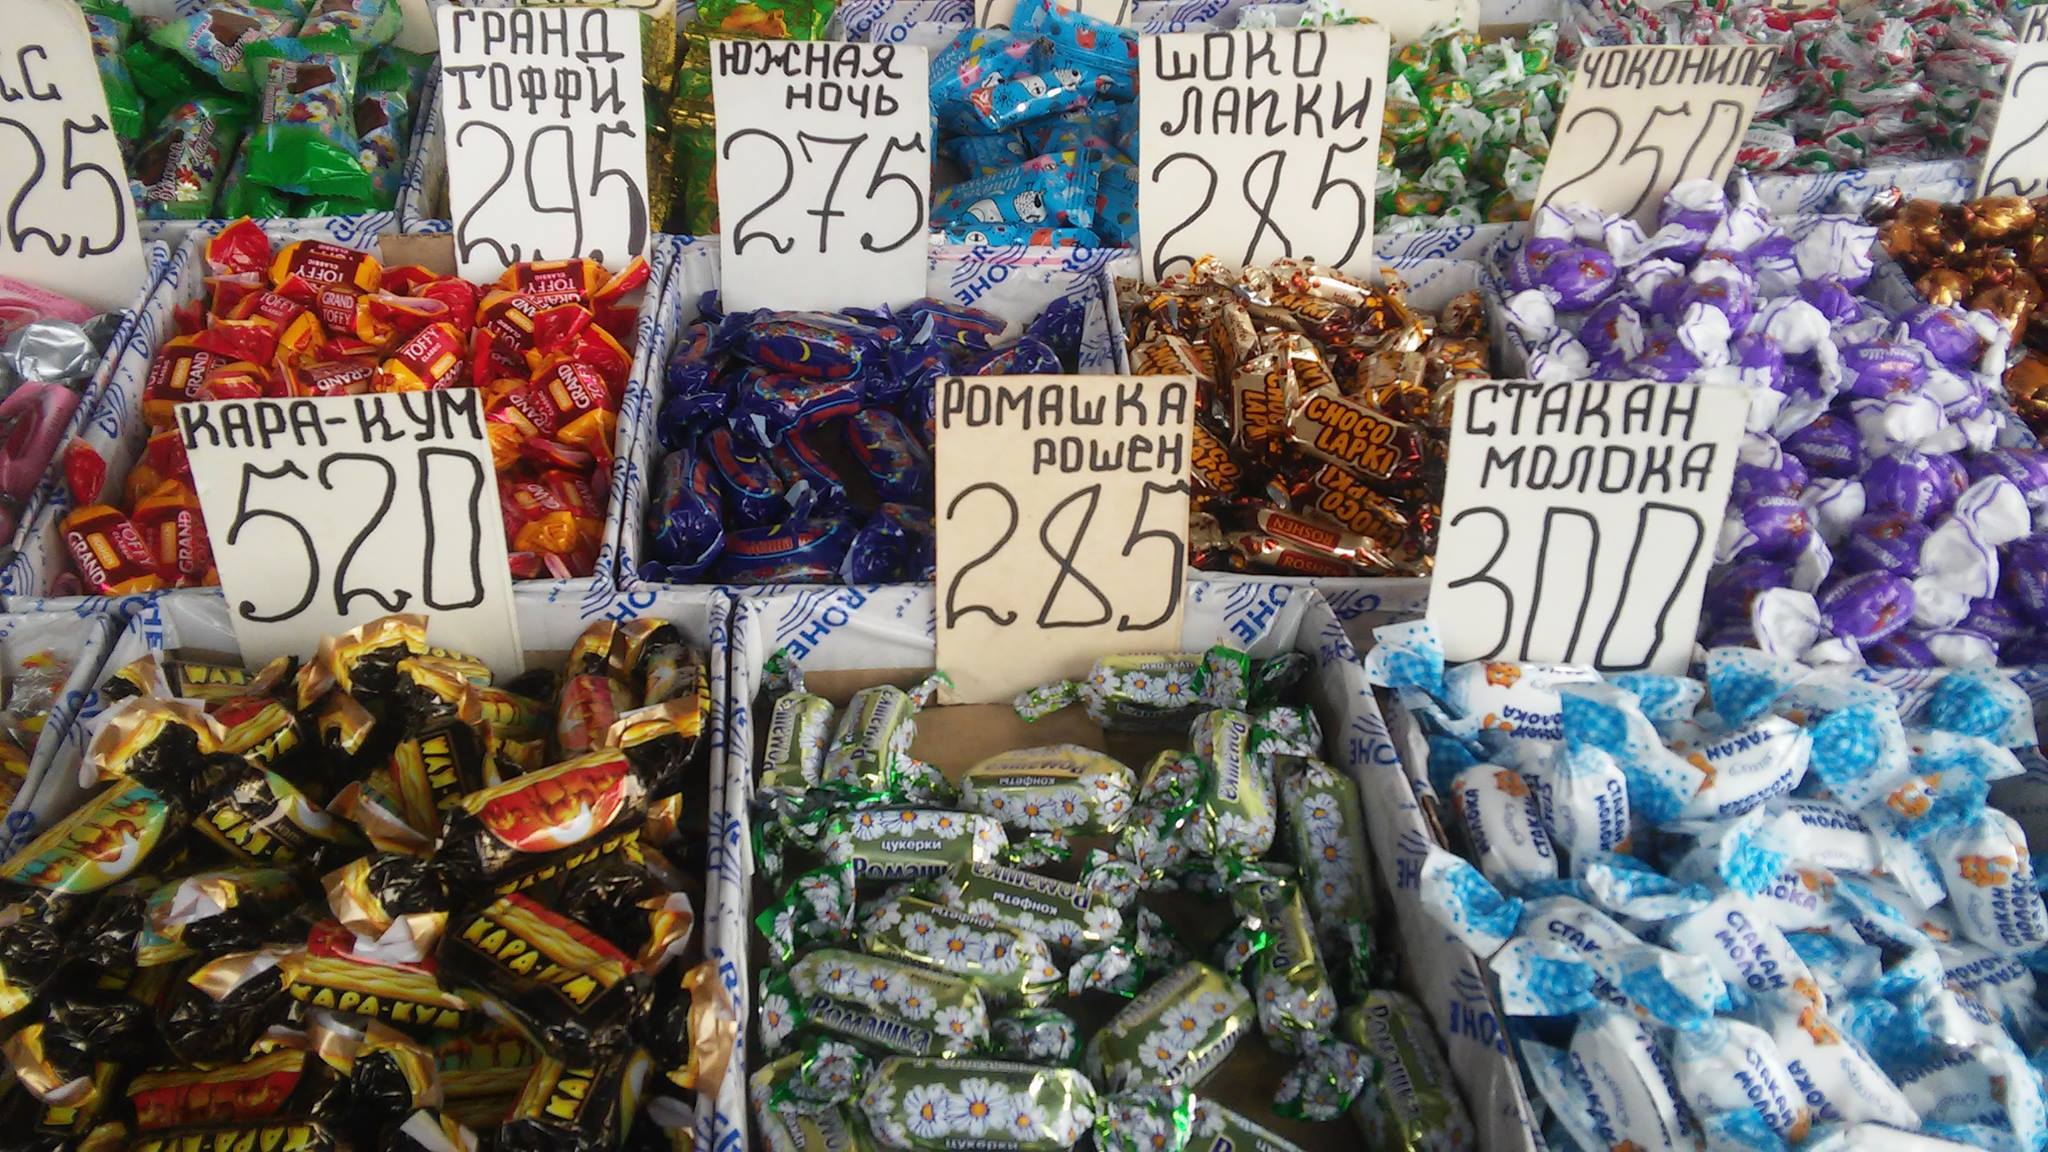 Порошенко конфеты Рошен в России